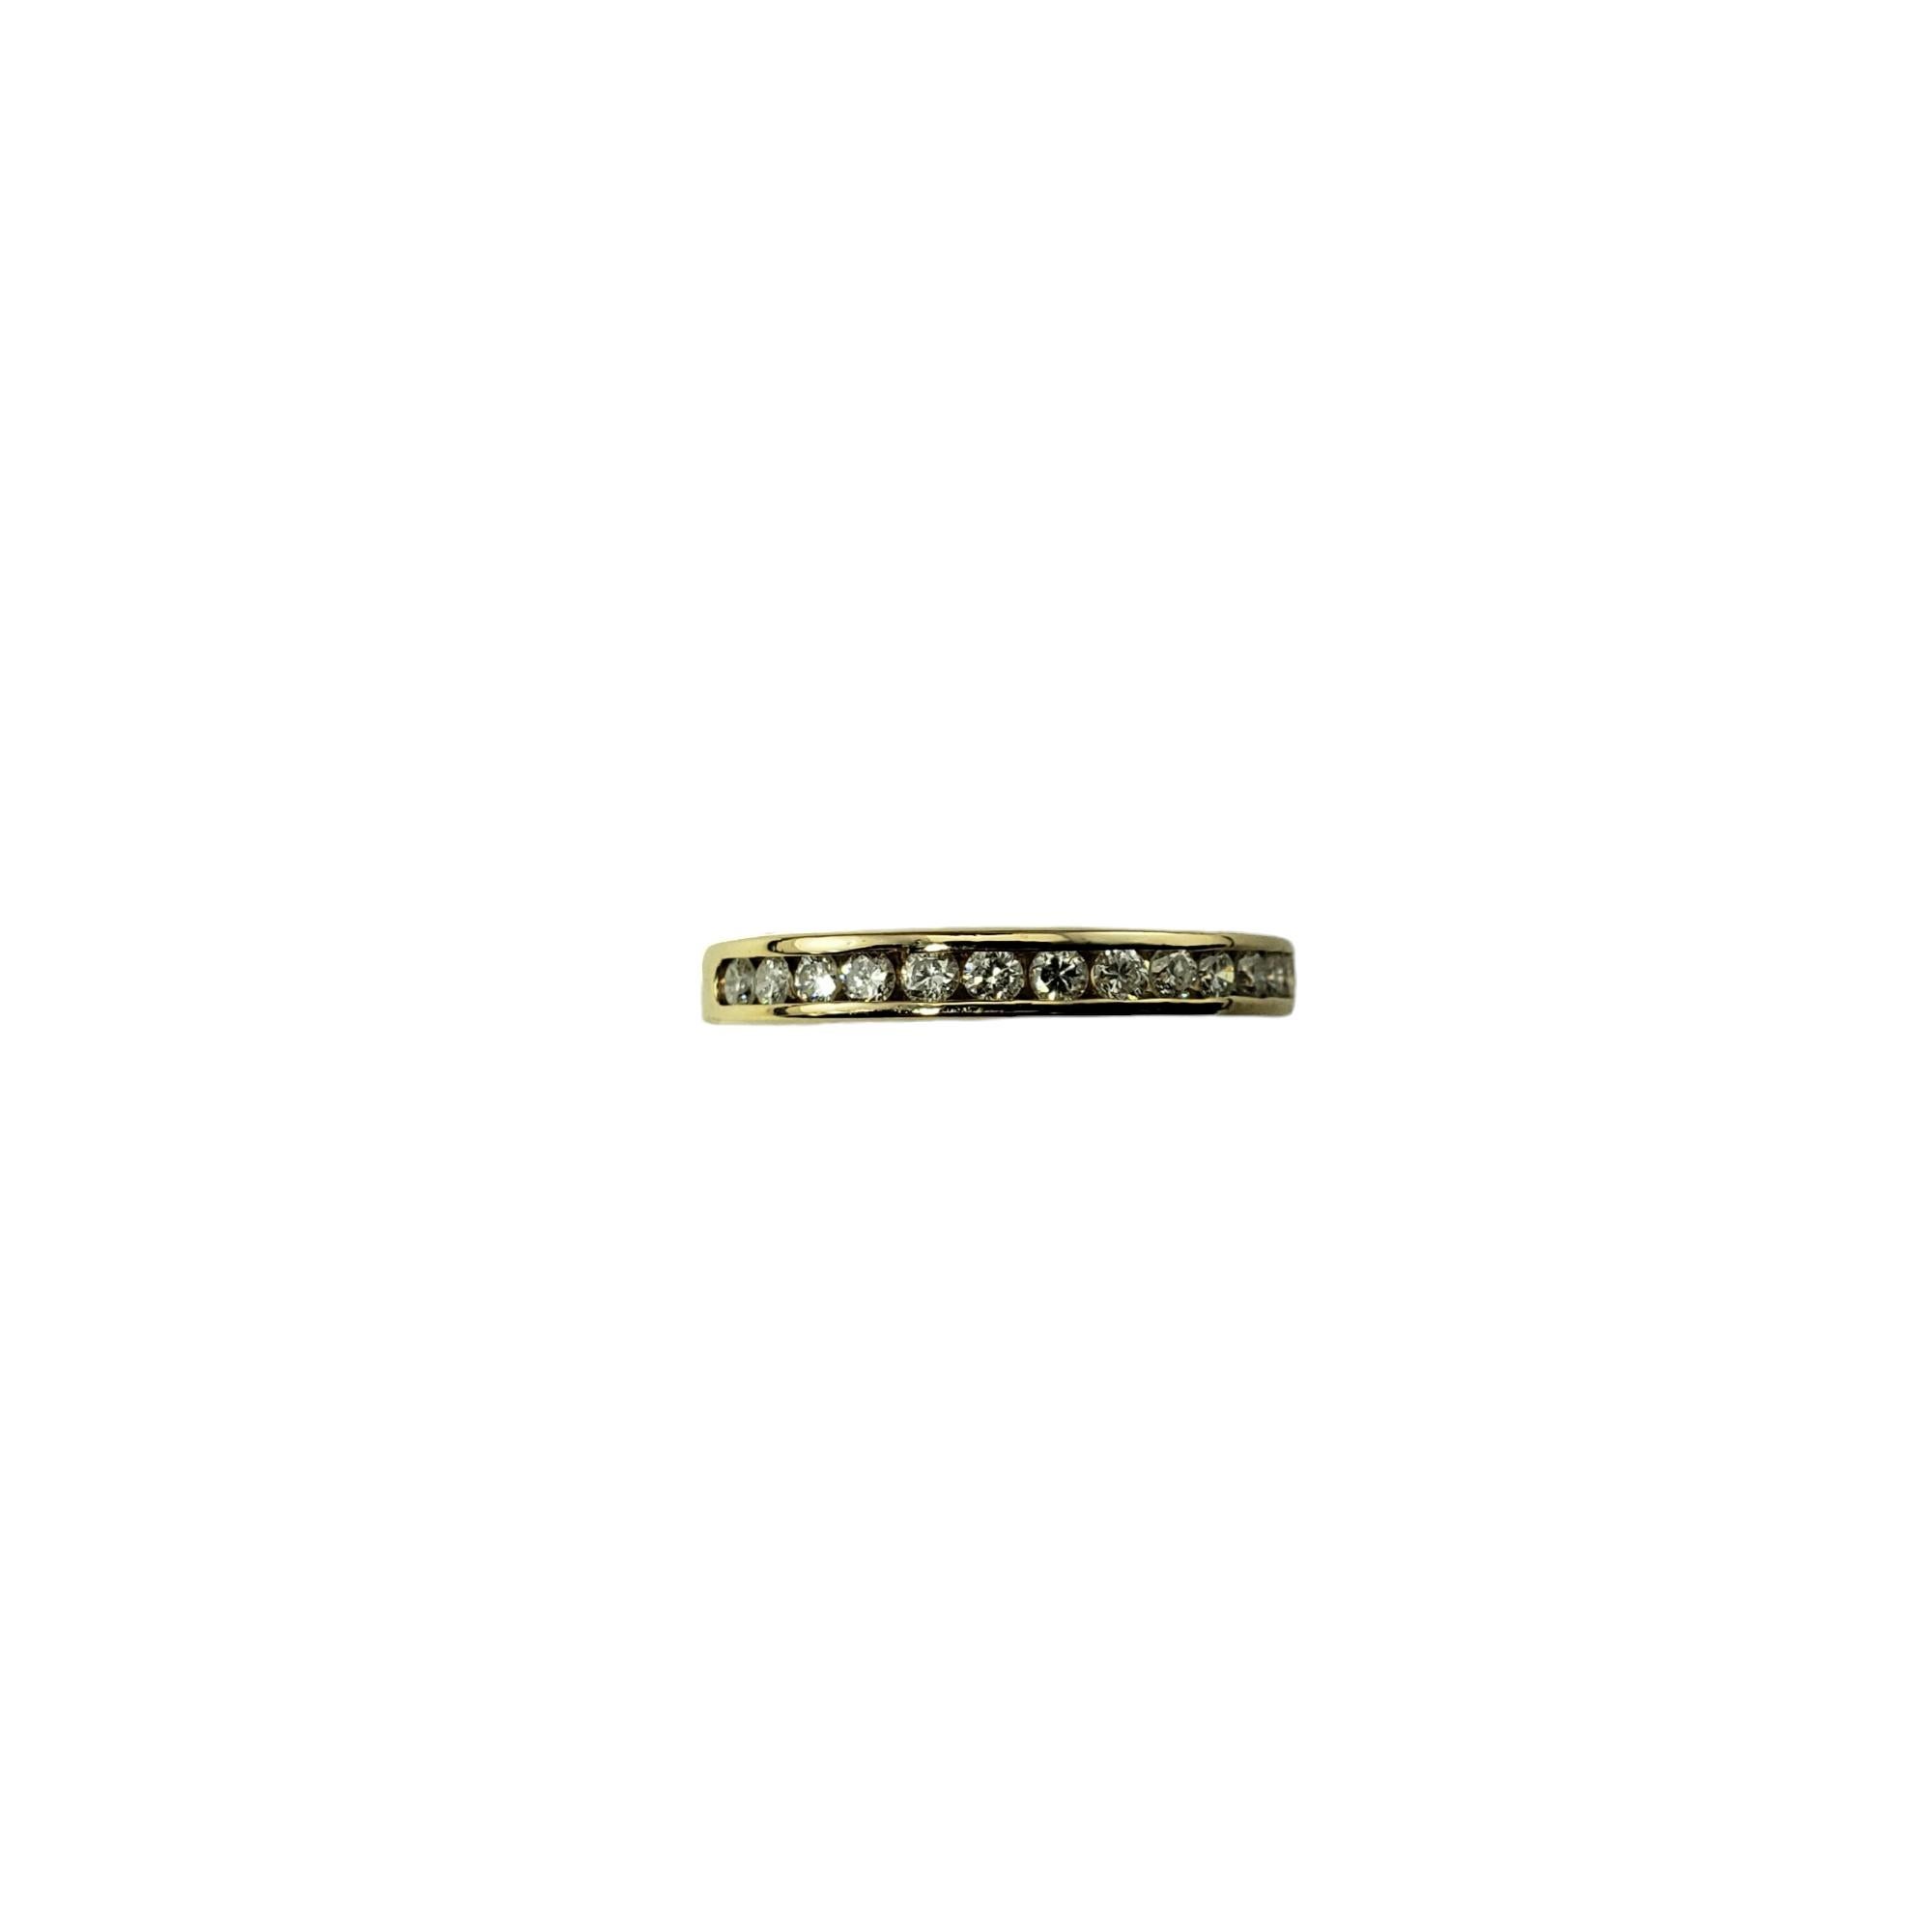 Anneau de mariage vintage en or jaune 14 carats et diamants Taille 6-

Ce bracelet étincelant présente 13 diamants ronds de taille brillante sertis dans de l'or jaune 14K classique.  Largeur : 3 mm.  Tige : 2 mm.

Poids total approximatif des